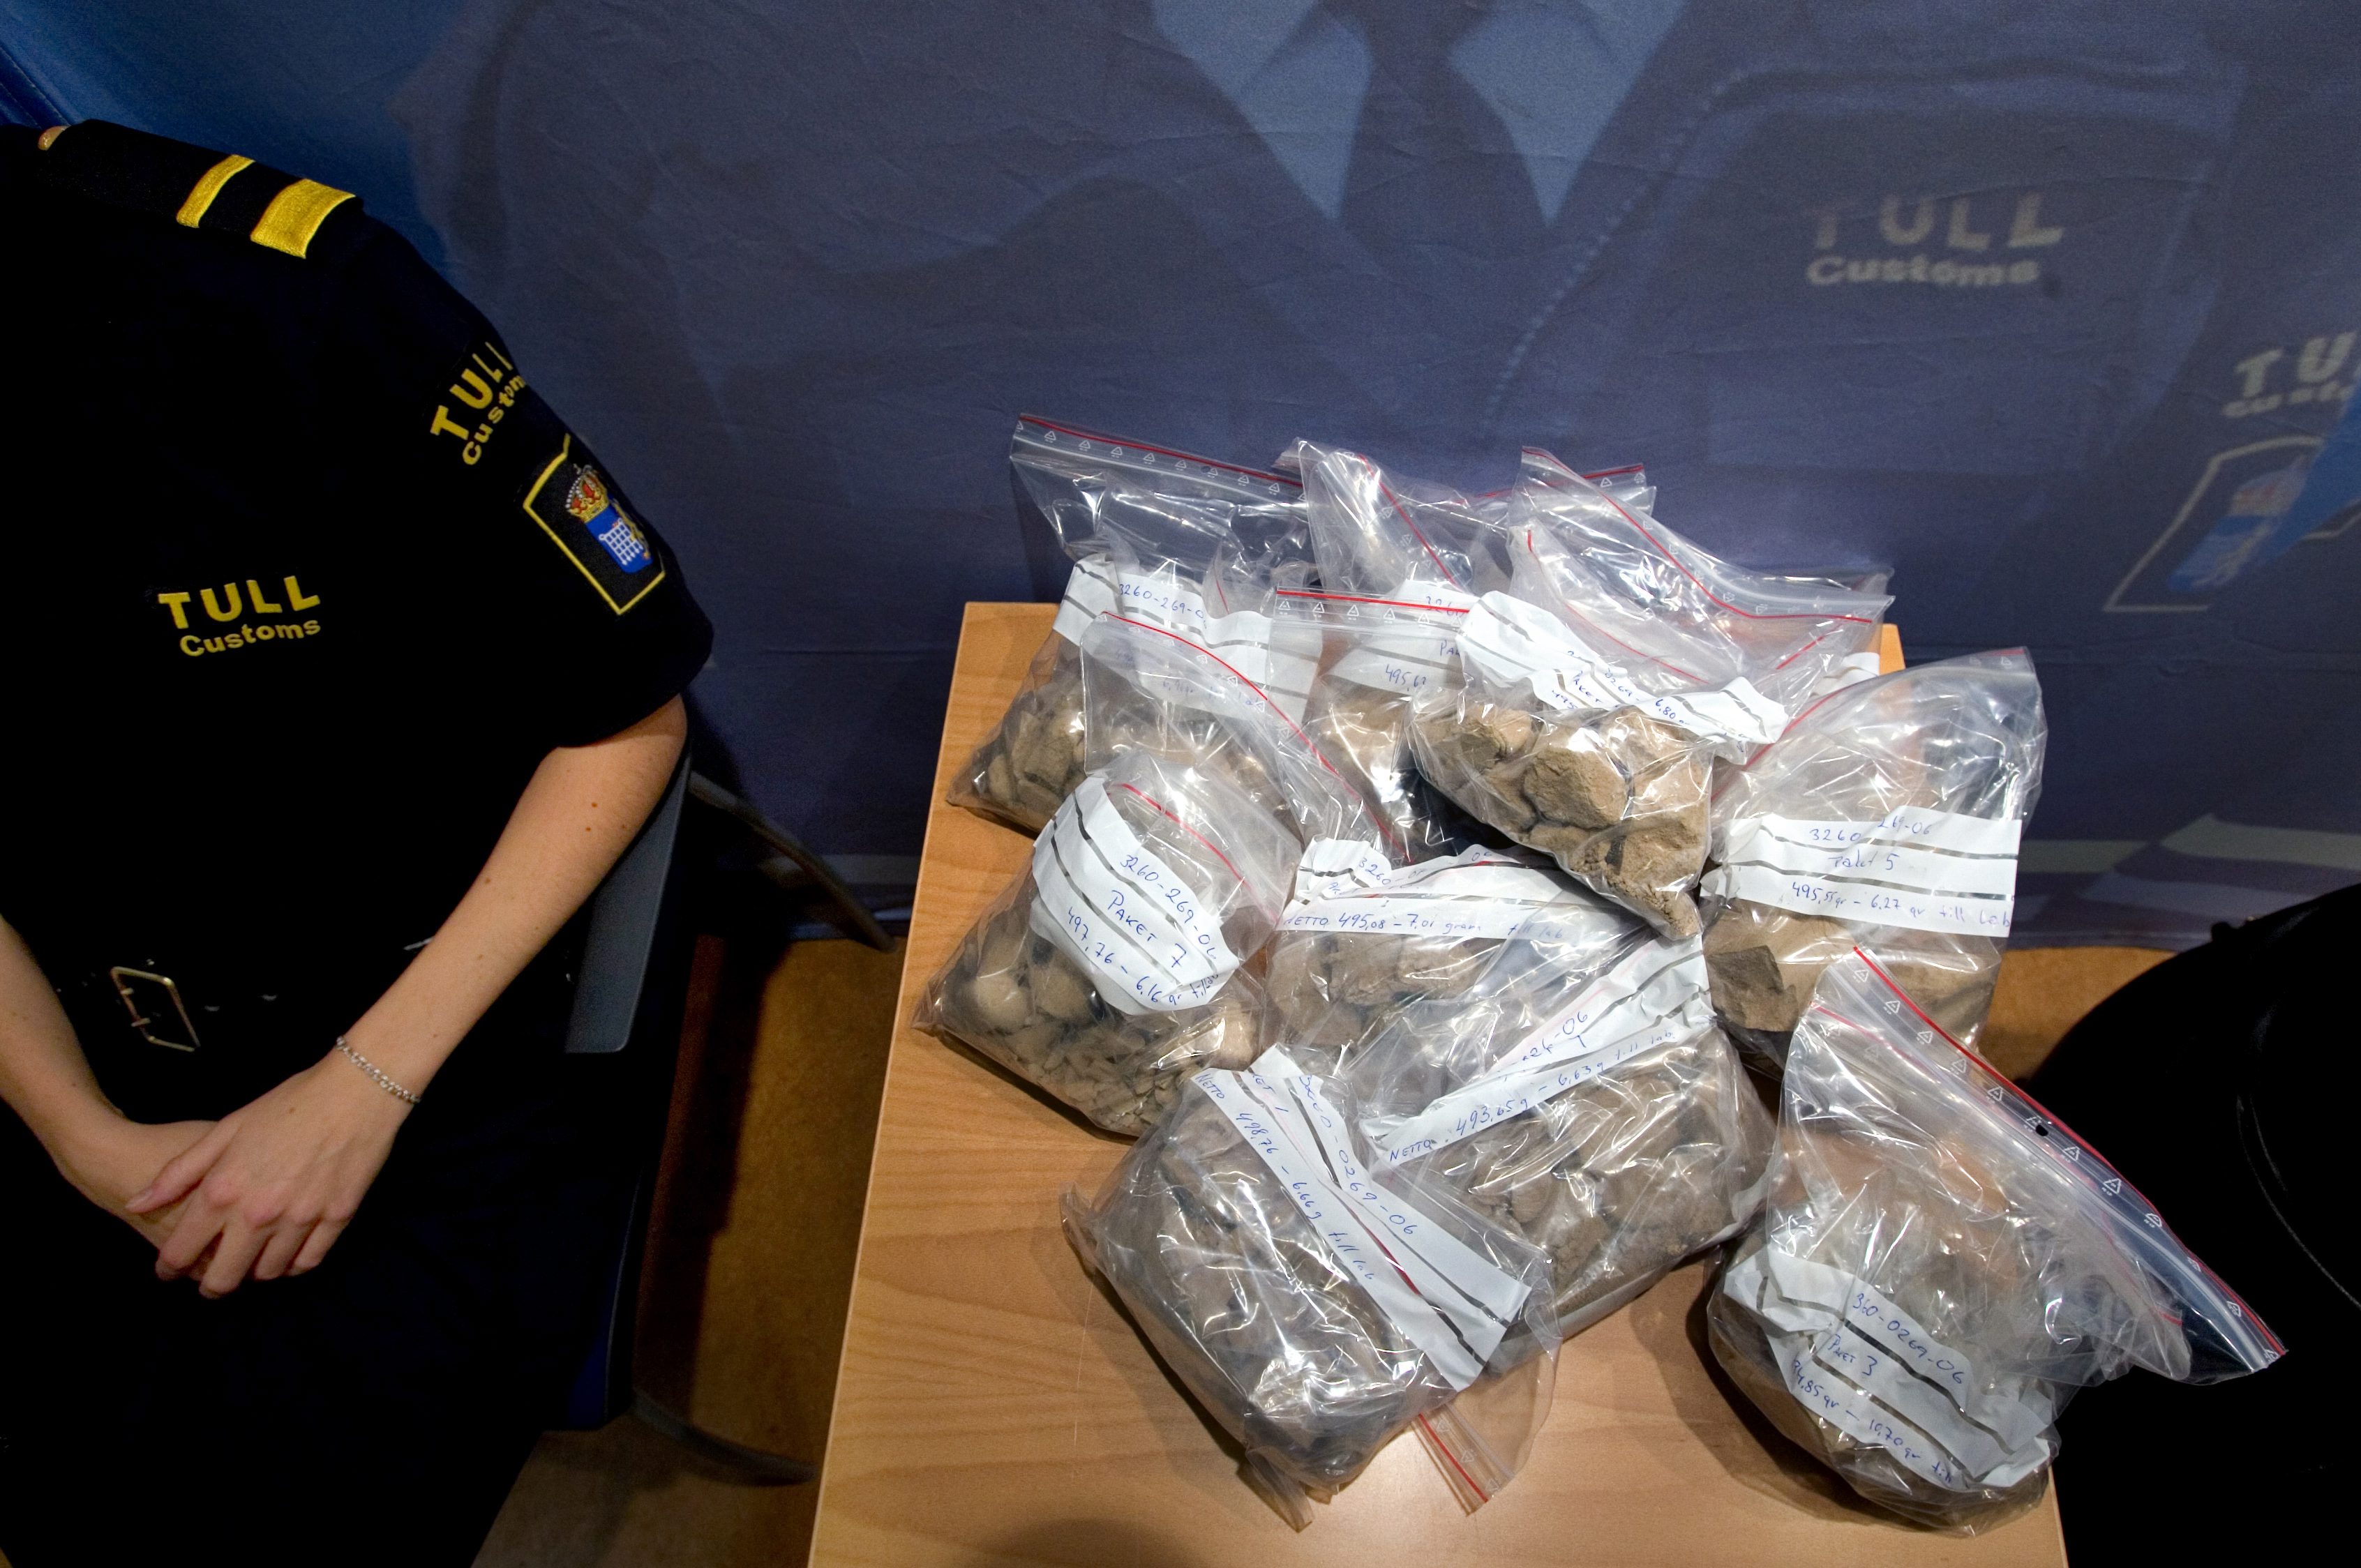 2006 avslöjade tullen en liga som smugglade kokain från Makedonien till Sverige. 25 kilo kokain beslagtogs.